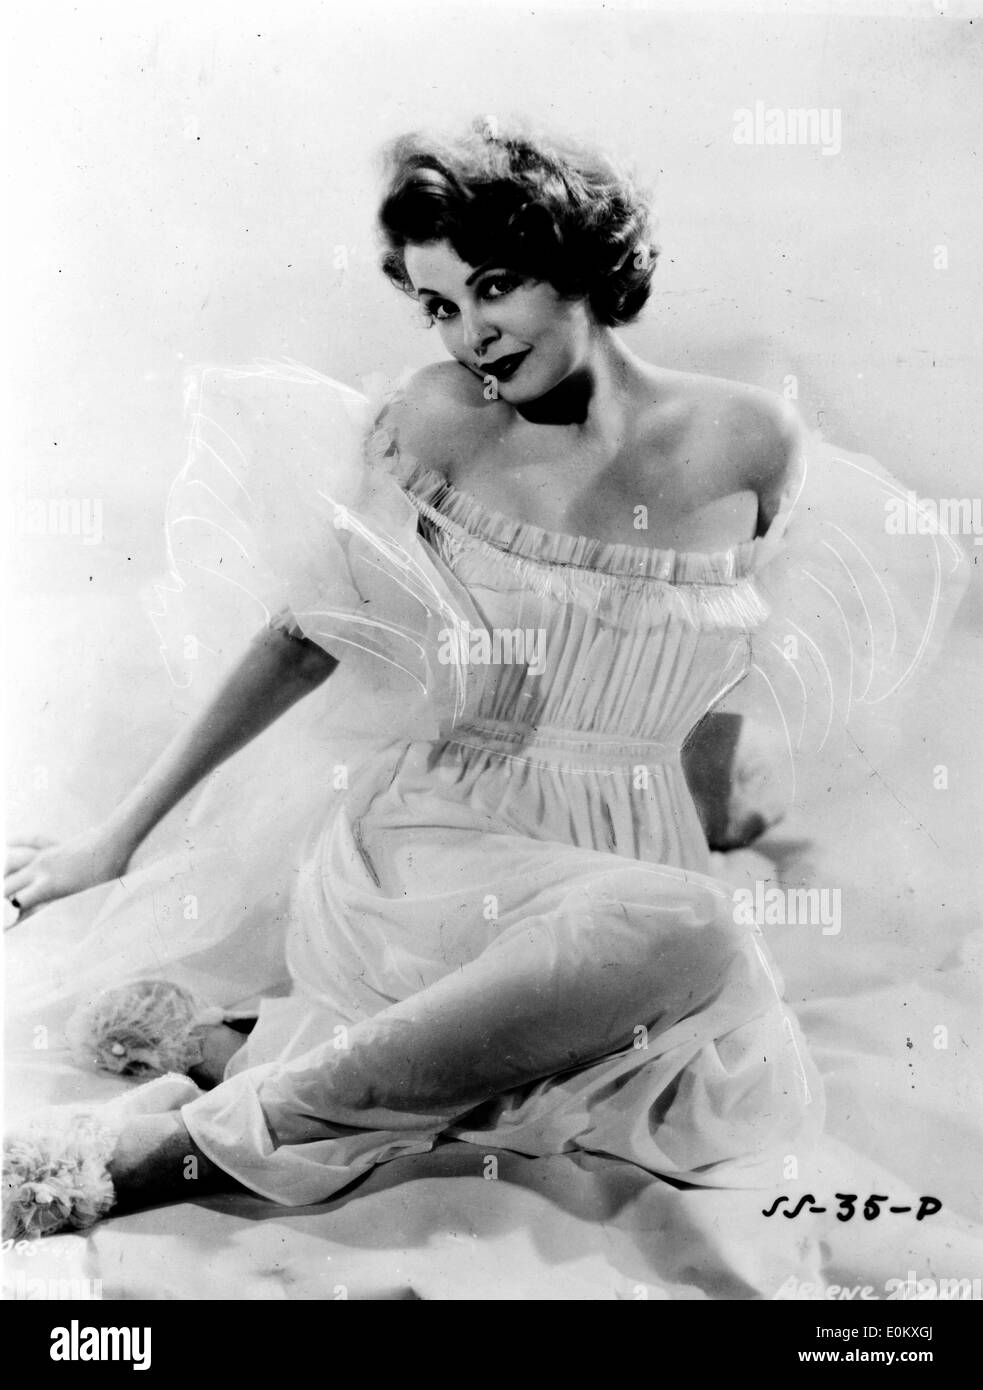 Gen 01, 1951 - File foto: circa degli anni cinquanta, la esatta posizione sconosciuta. ARLENE DAHL (nato il 11 agosto 1925) è un film americano attrice e ex MGM contratto star, che hanno raggiunto la notorietà durante gli anni cinquanta. Ella è la madre di attore Lorenzo Lamas. Foto Stock